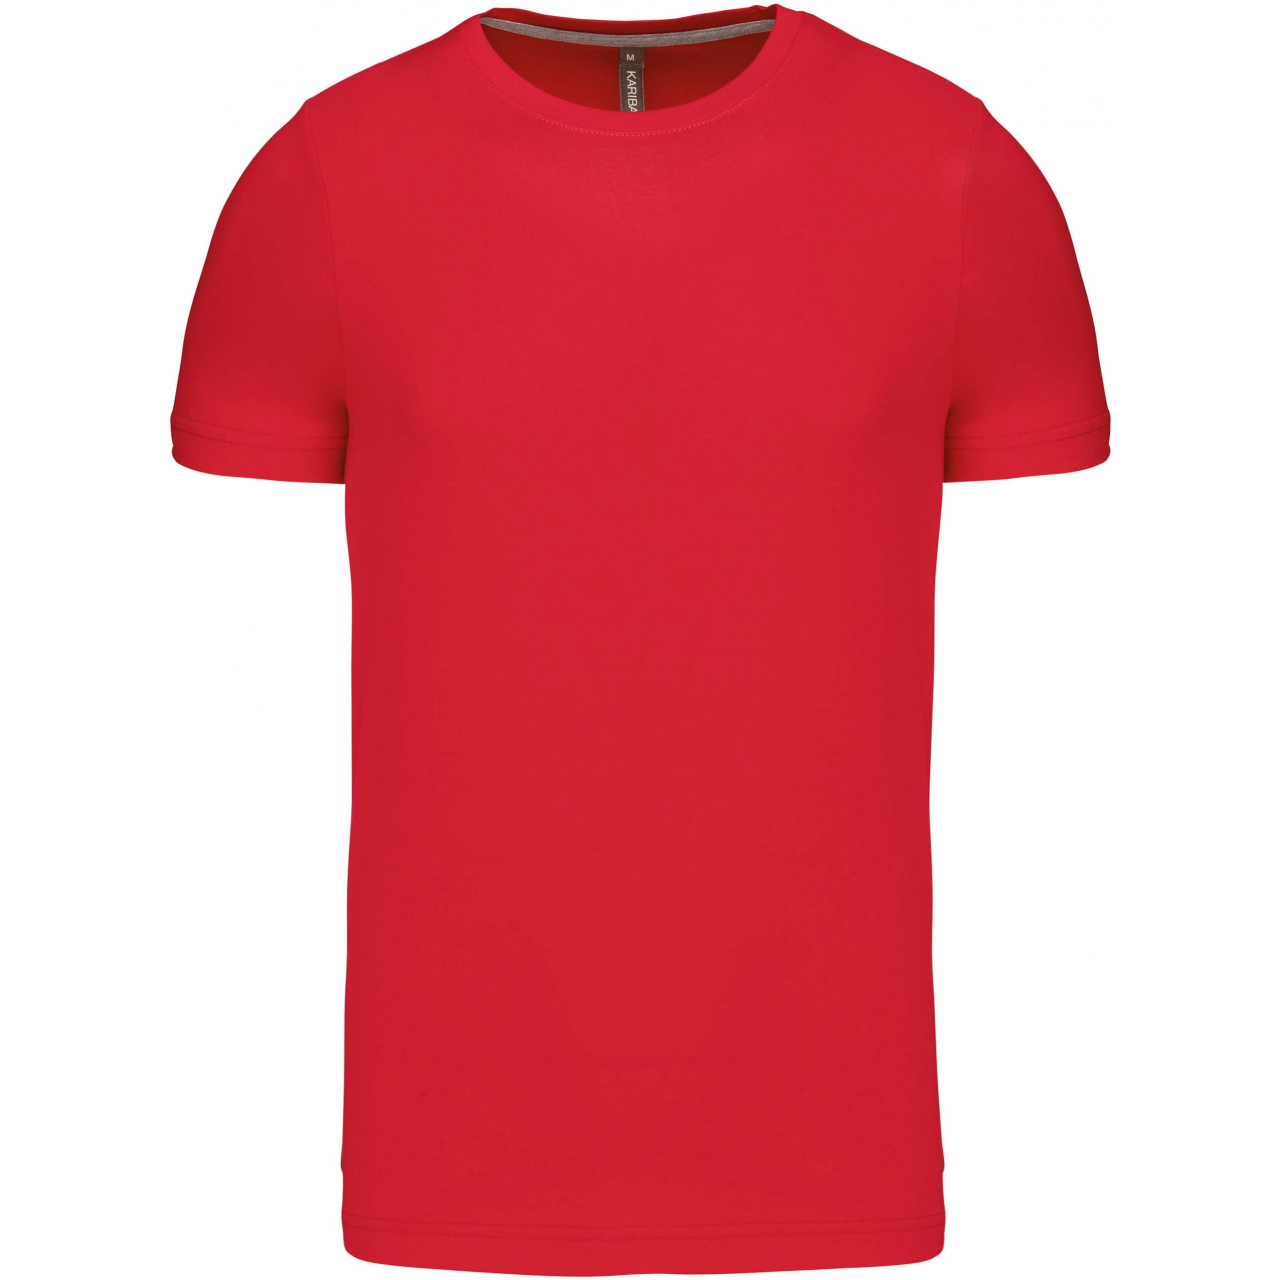 Pánské tričko Kariban krátký rukáv - červené, L